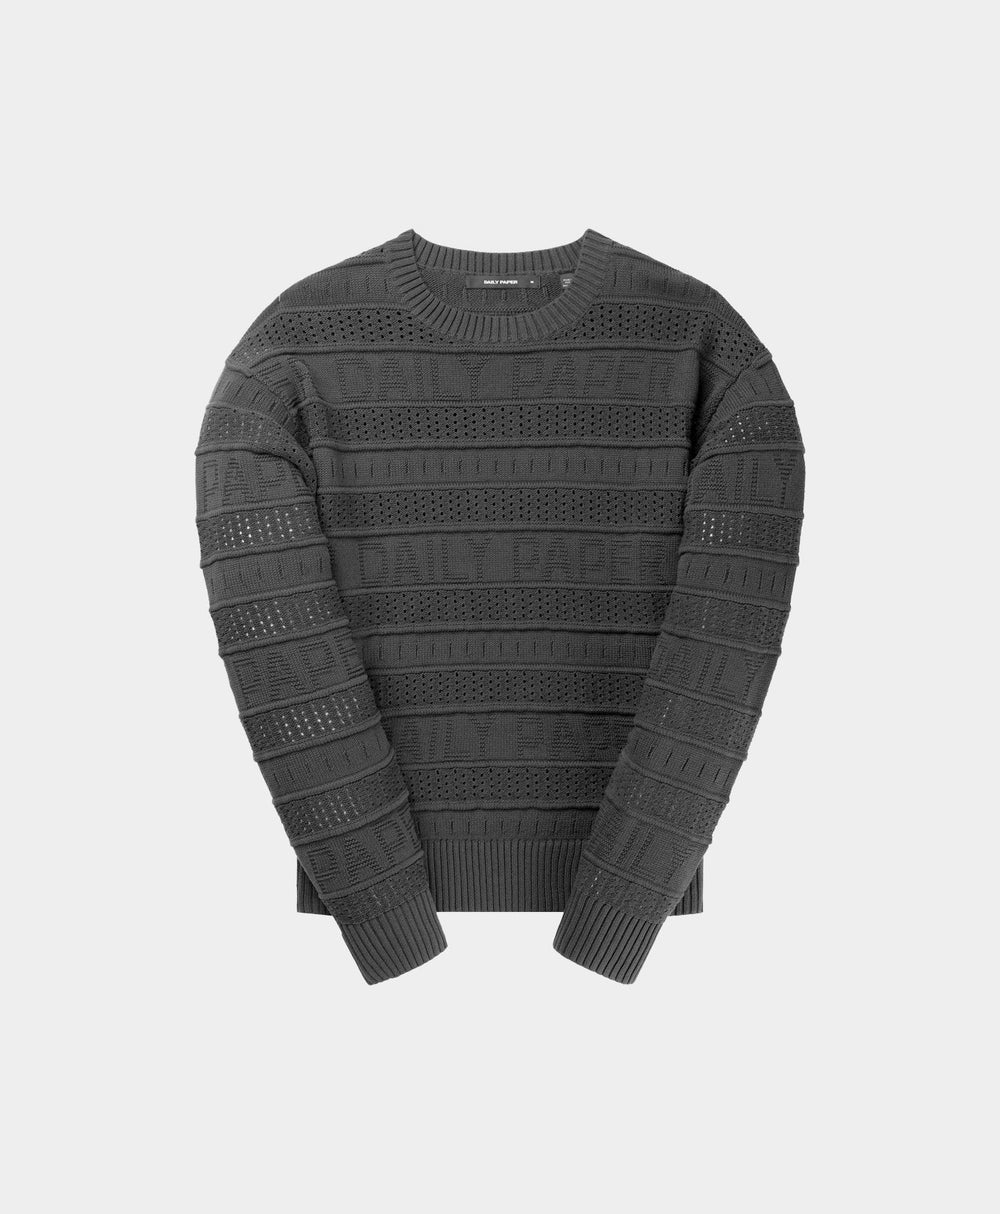 DP - Black Rajih Knit Sweater - Packshot - Front